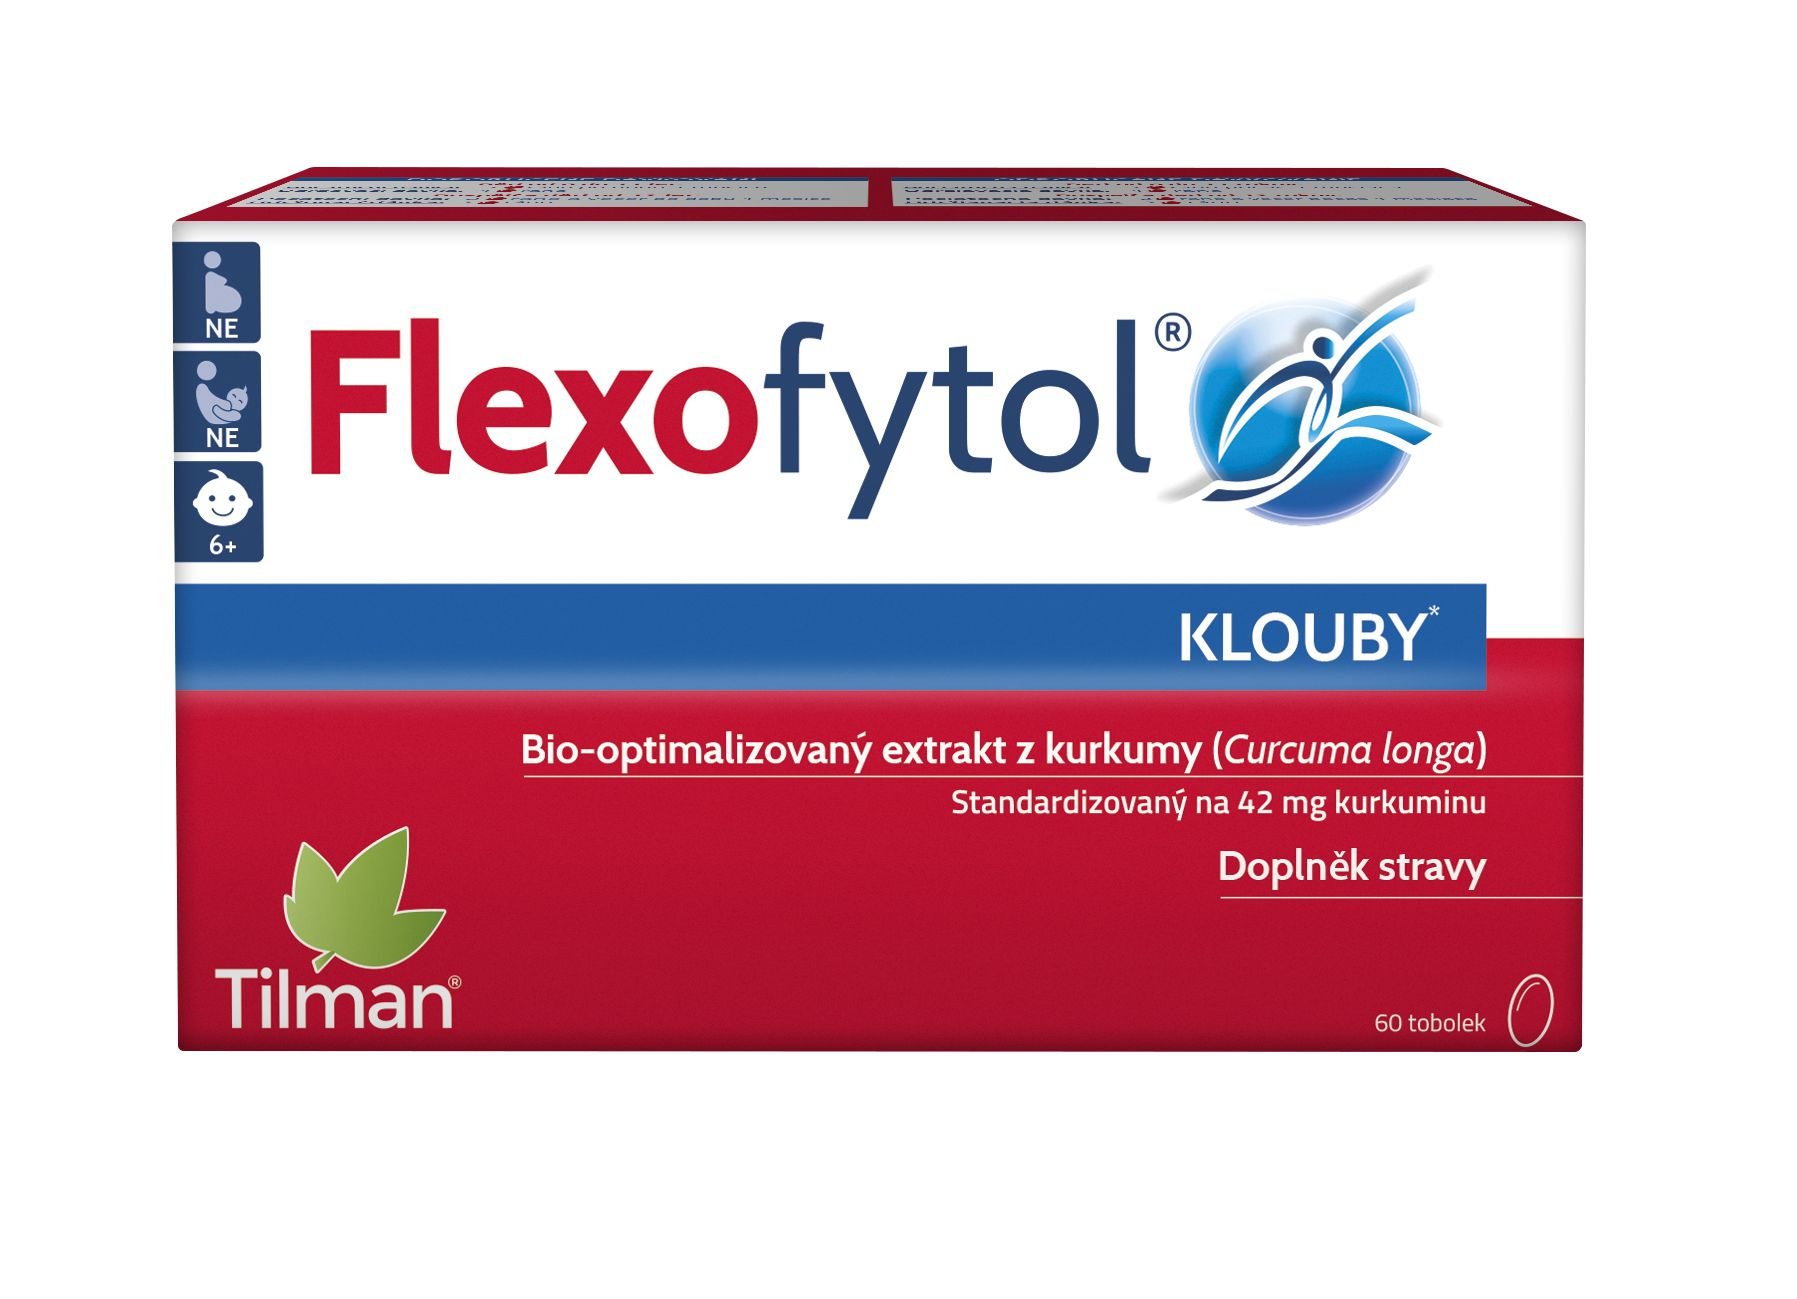 Flexofytol 60 tobolek Flexofytol